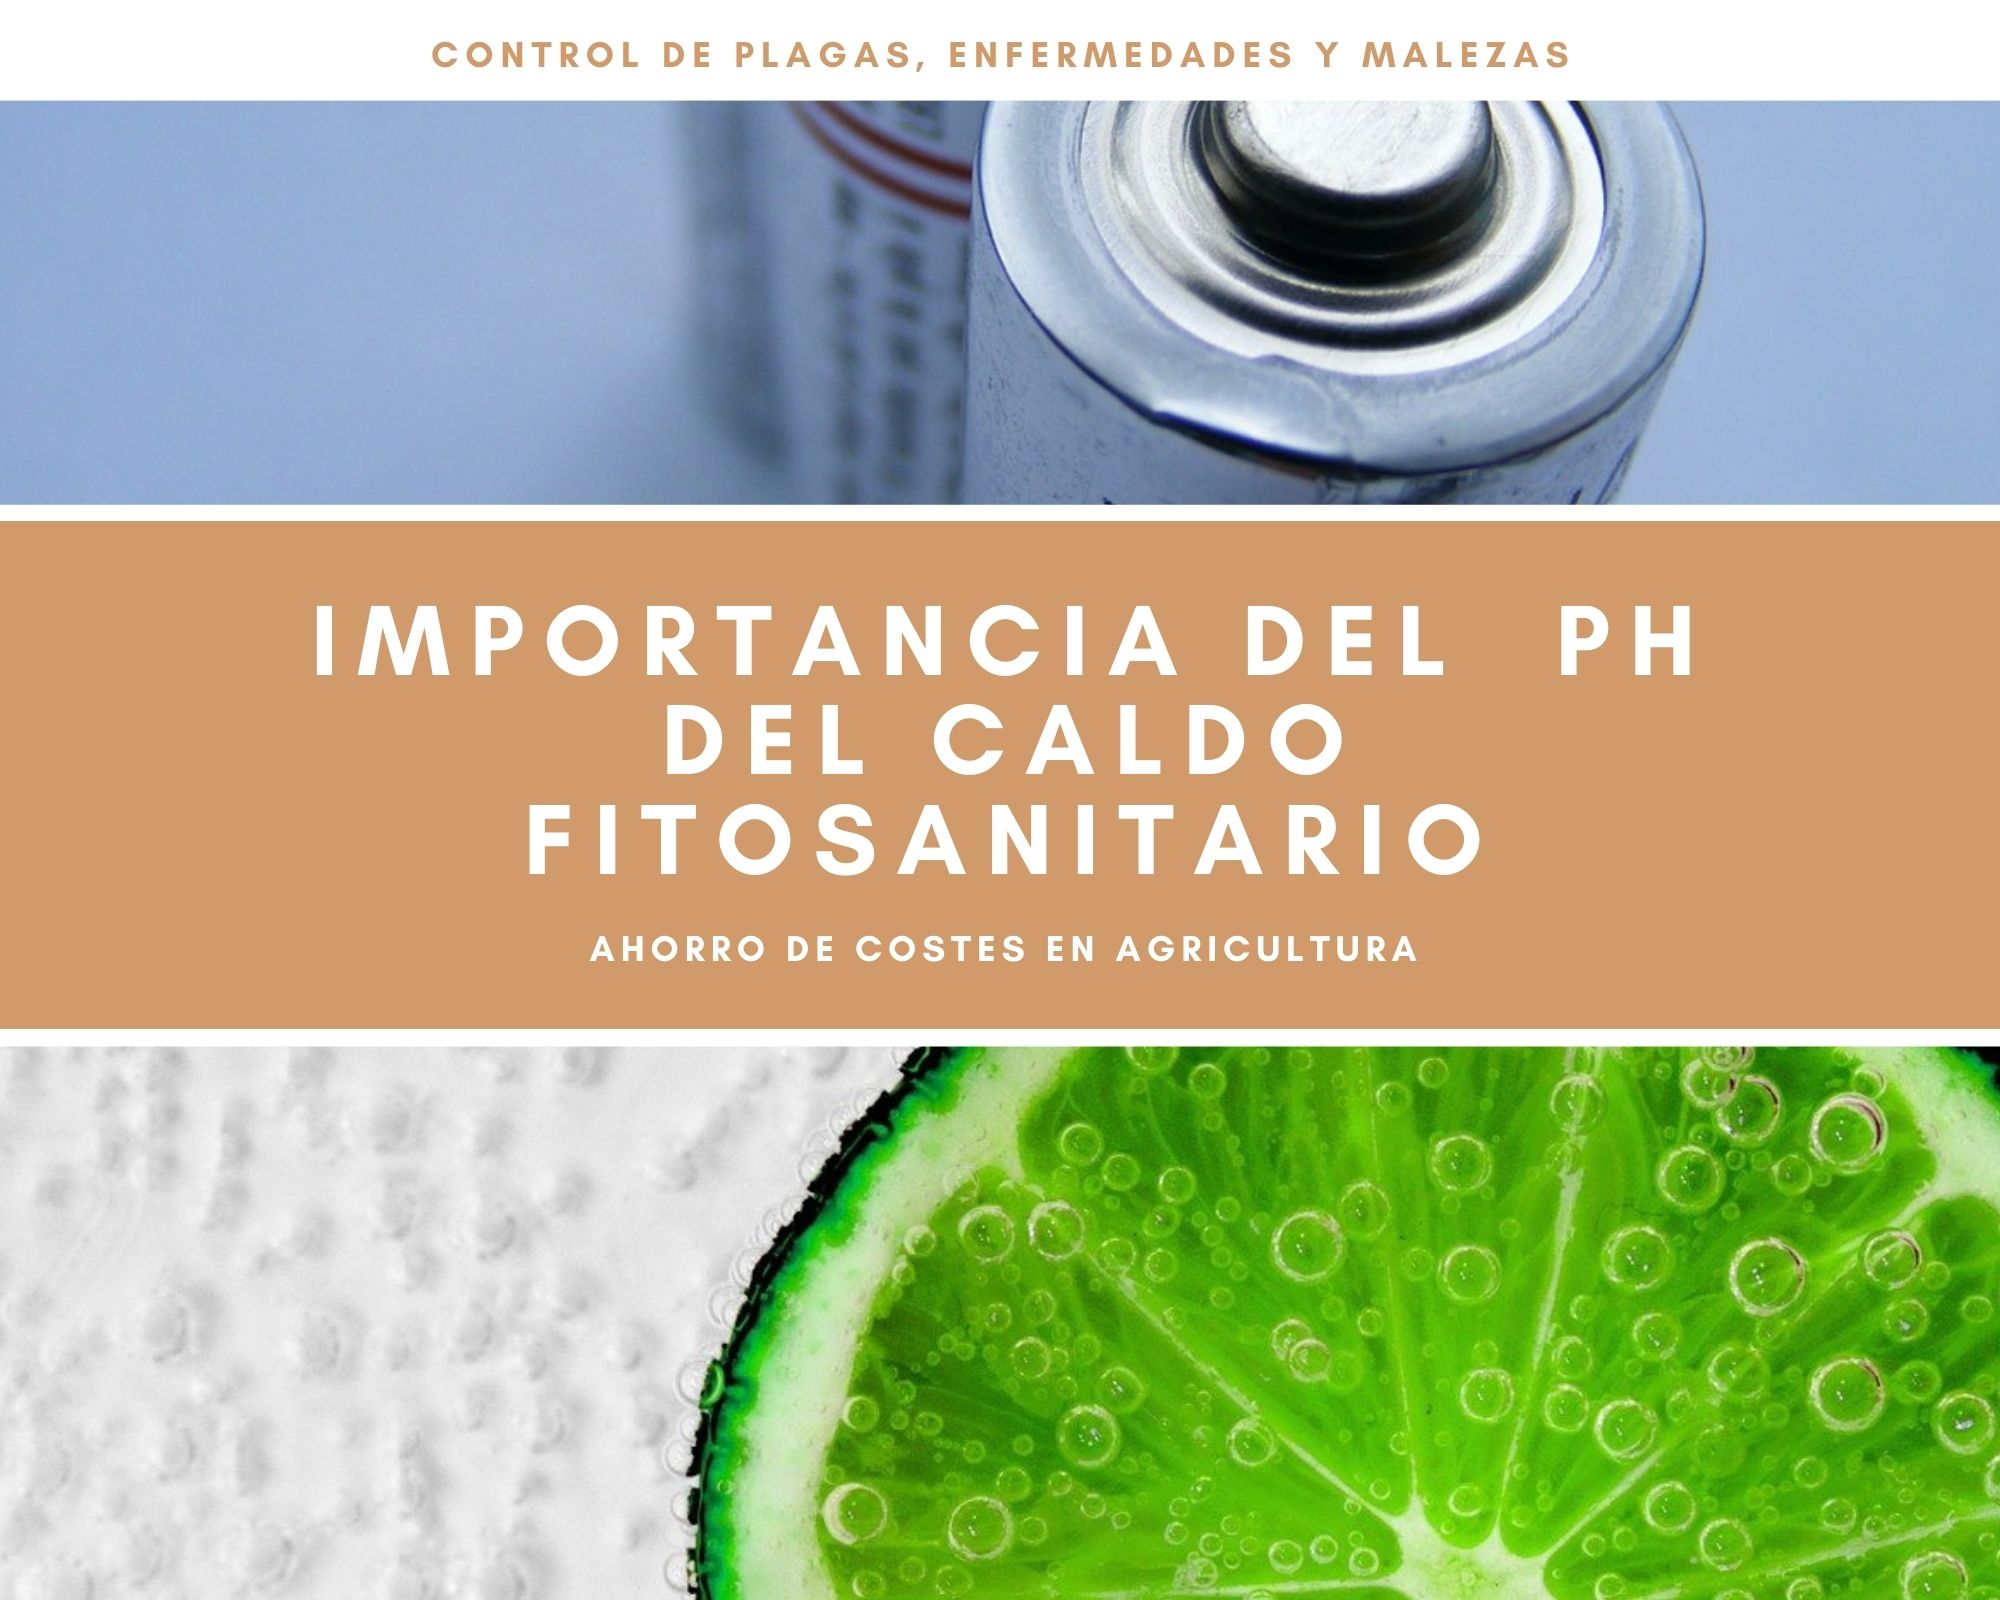 Importancia del pH en la eficacia caldo fitosanitario